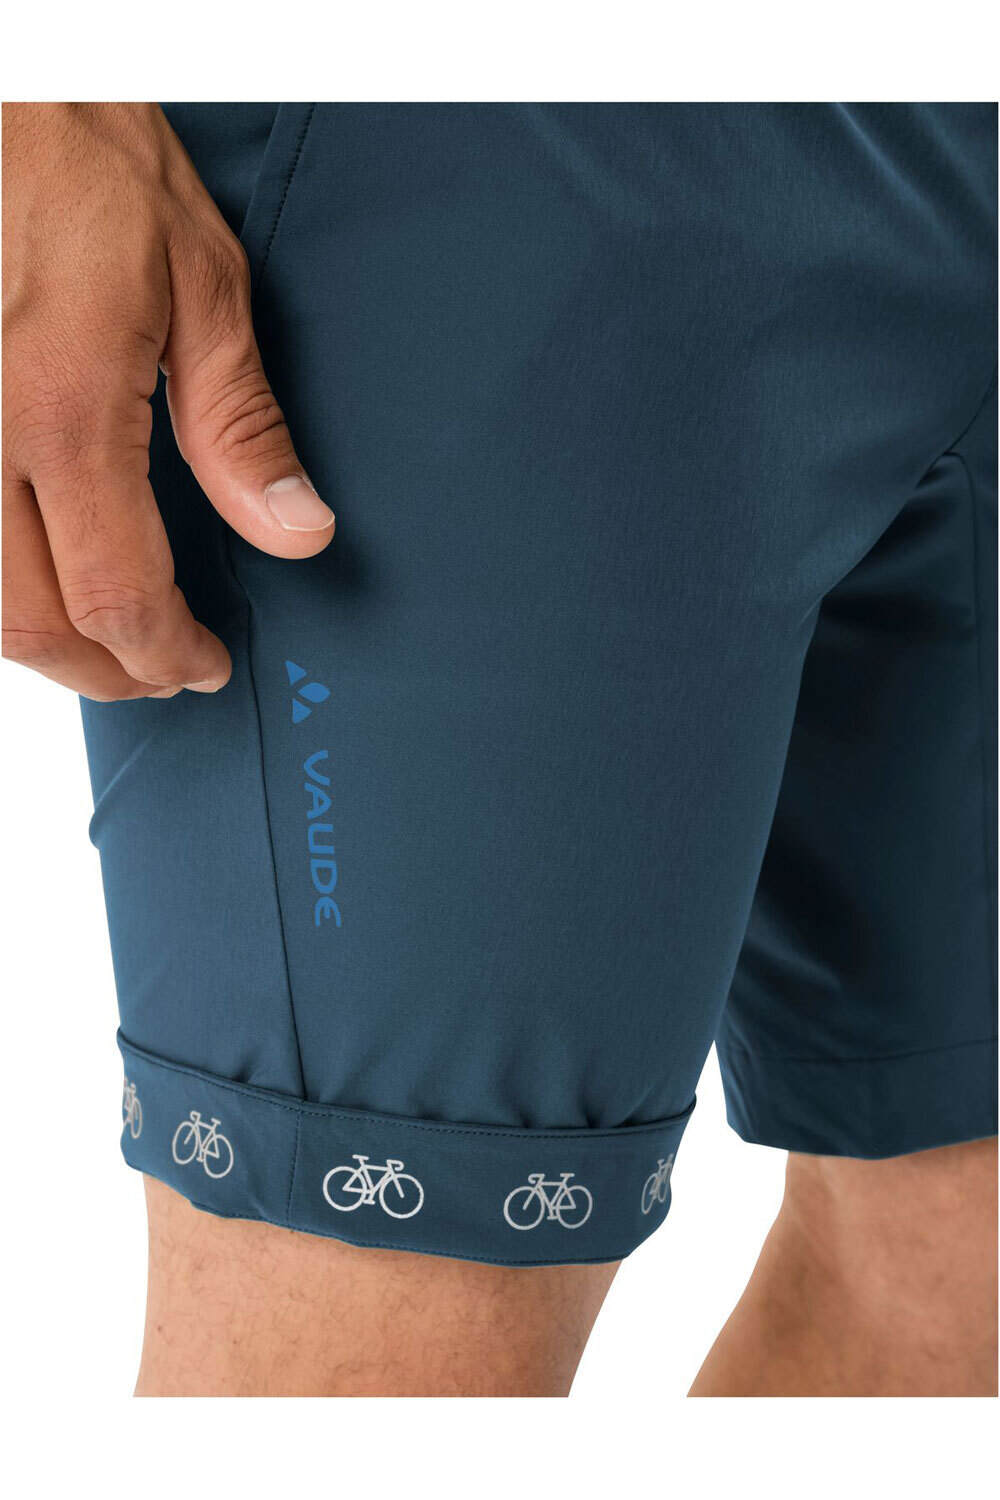 Vaude pantalón corto ciclismo hombre Men's Cyclist Shorts vista detalle